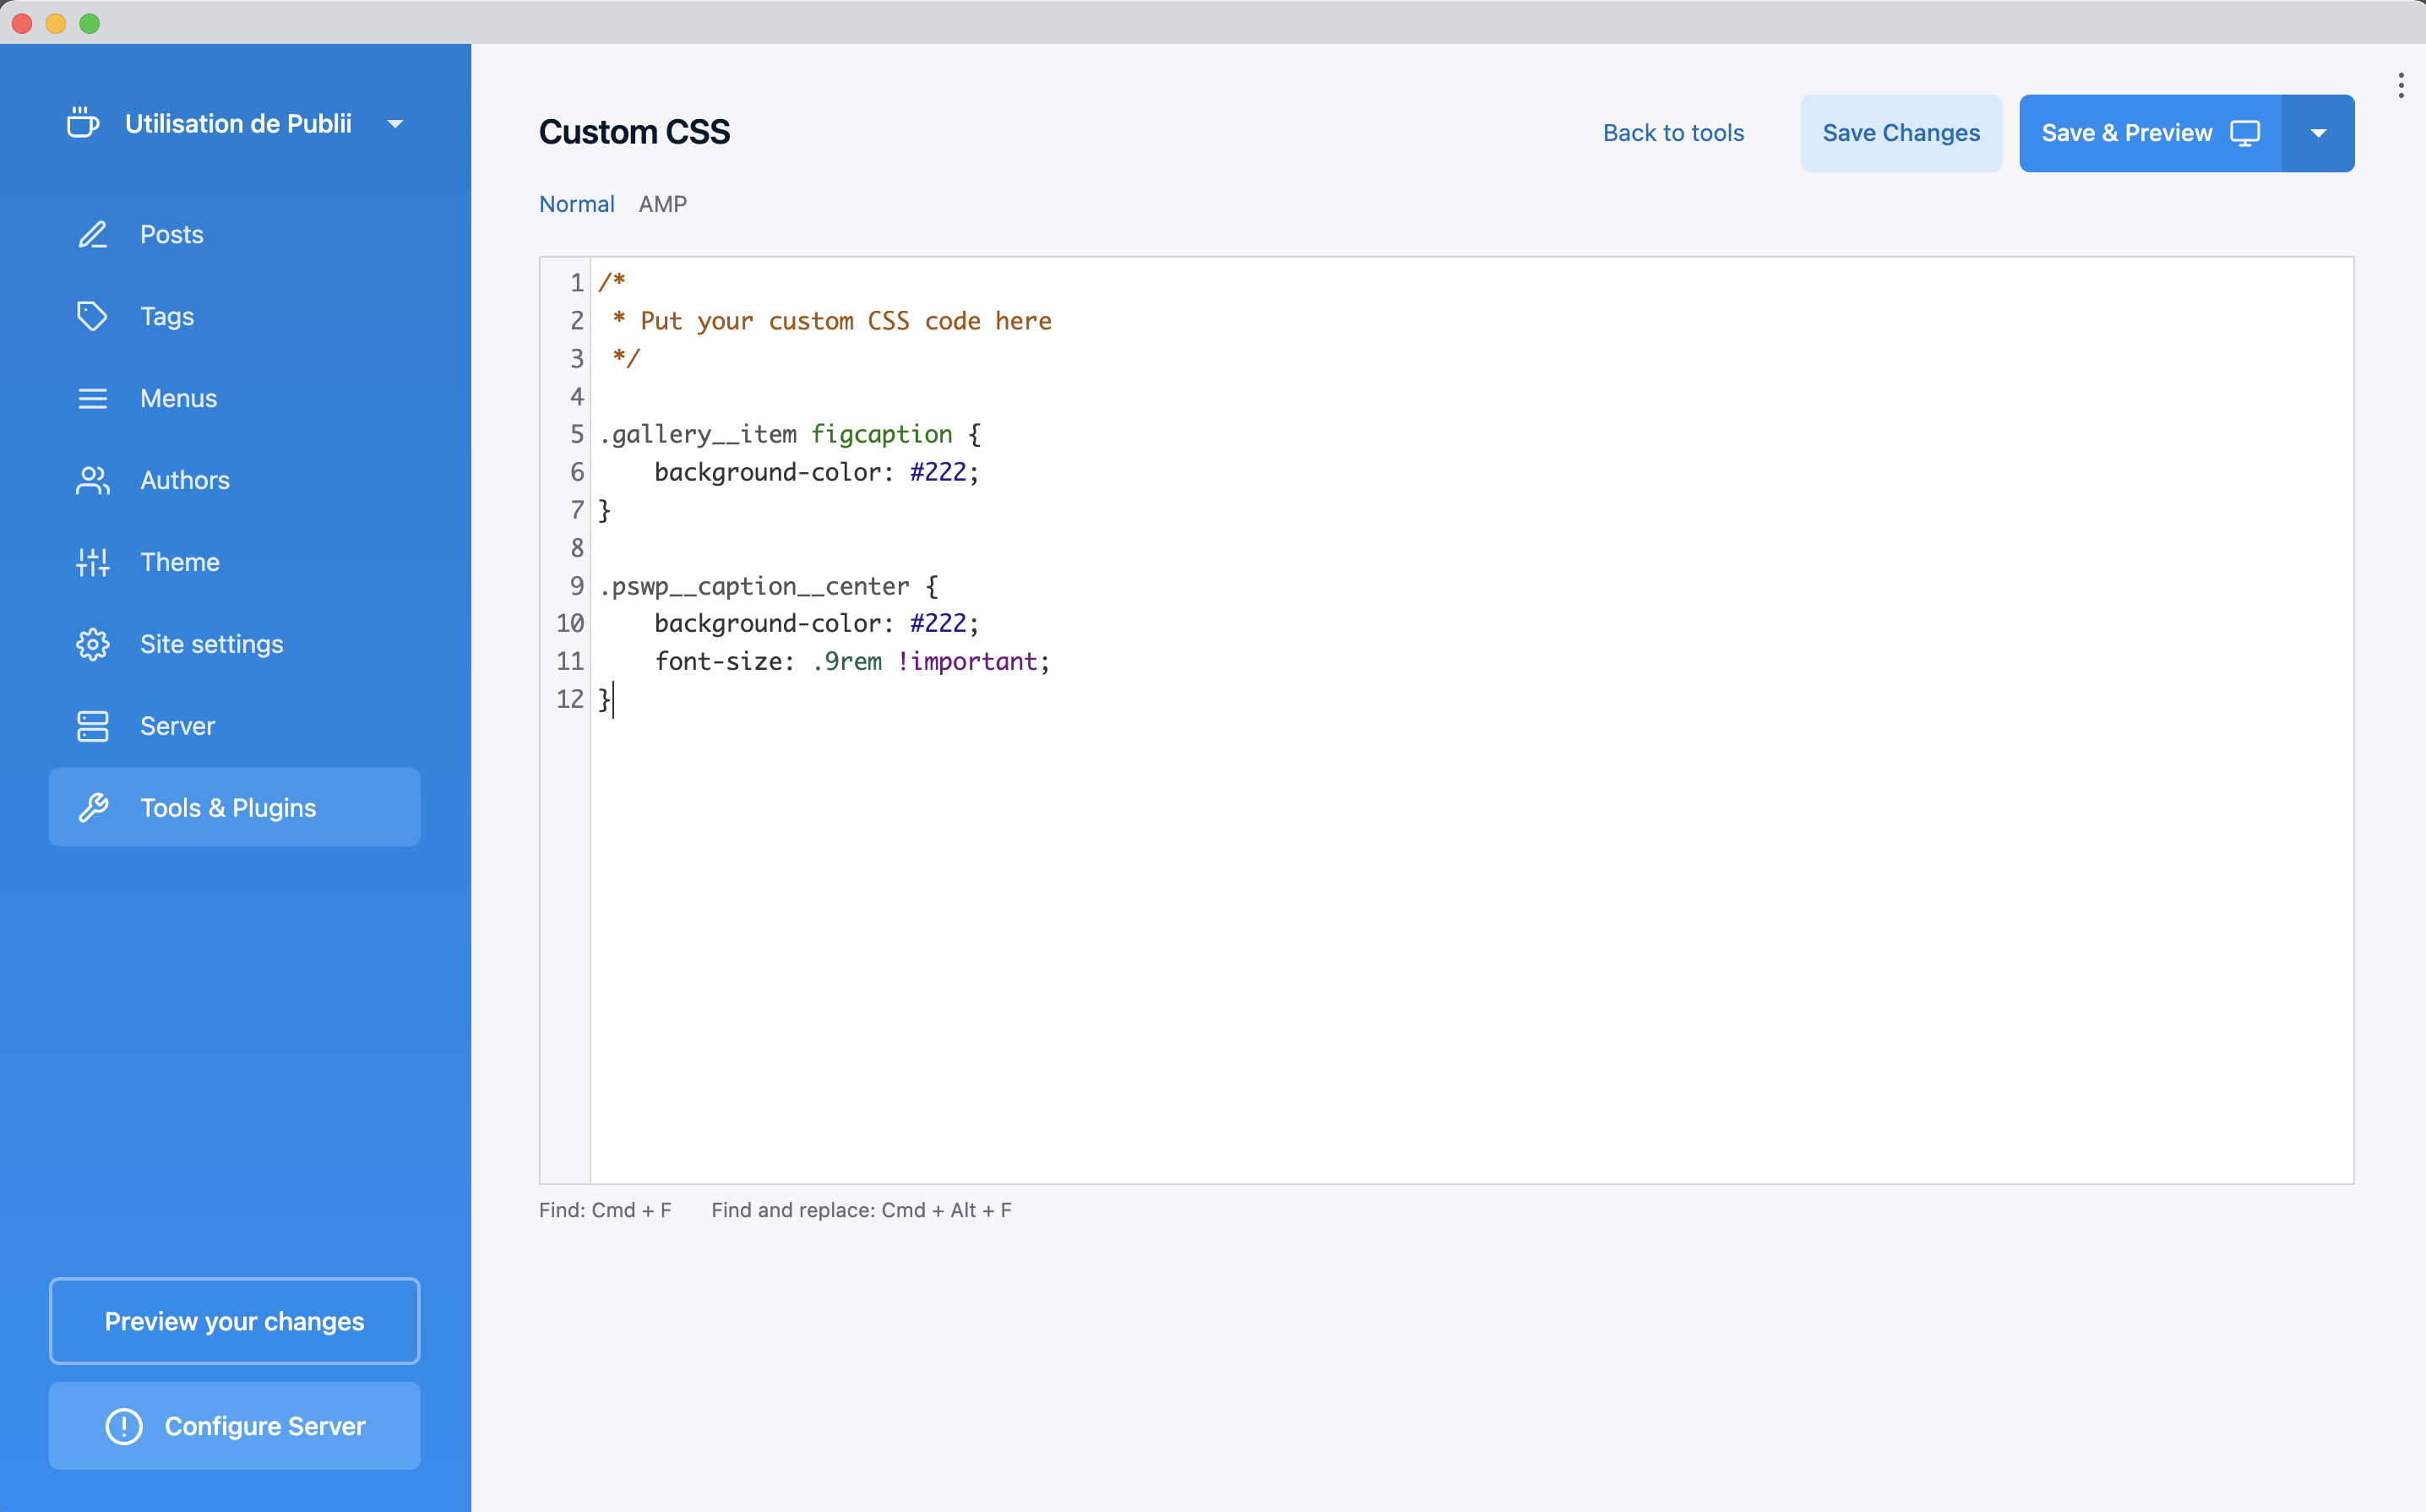 Capture d'écran de la fenêtre de paramétrage des CSS personnalisées dans Publii